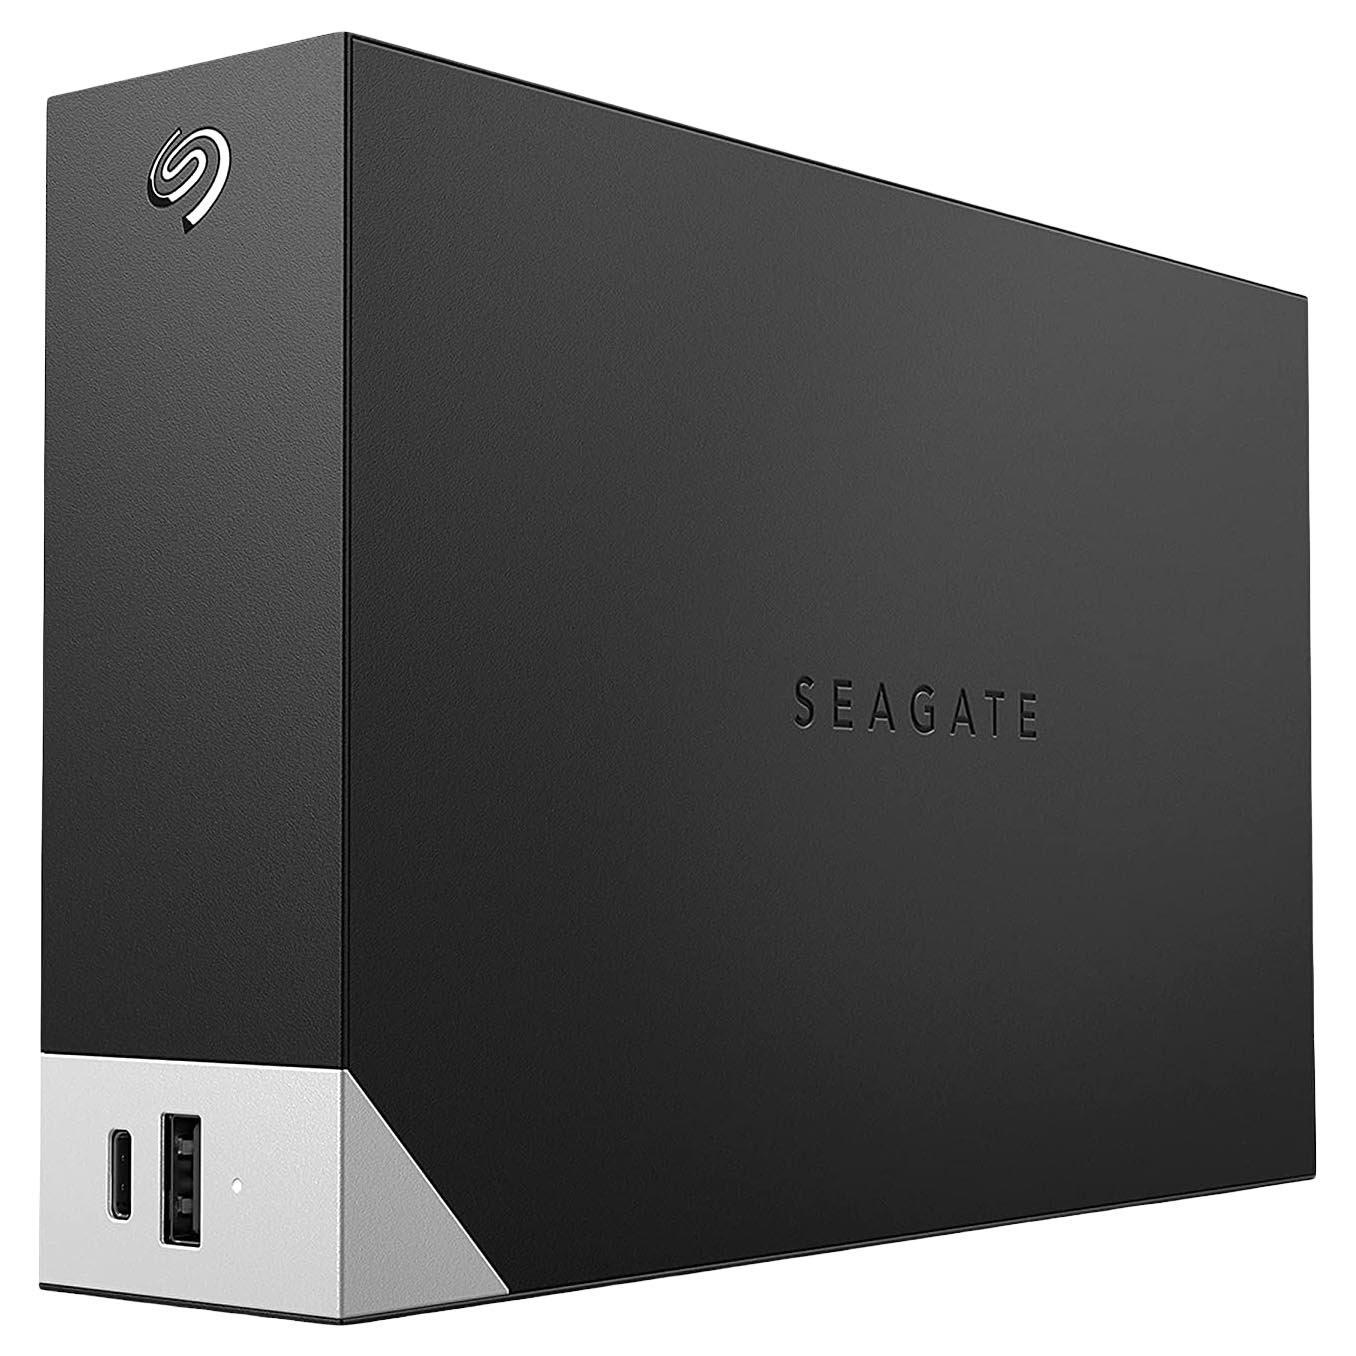 Внешний жесткий диск Seagate One Touch, STLC4000400, 4Тб, 3.5 внешний жесткий диск 2 5 4 tb usb 3 0 seagate one touch stkc4000401 серебристый